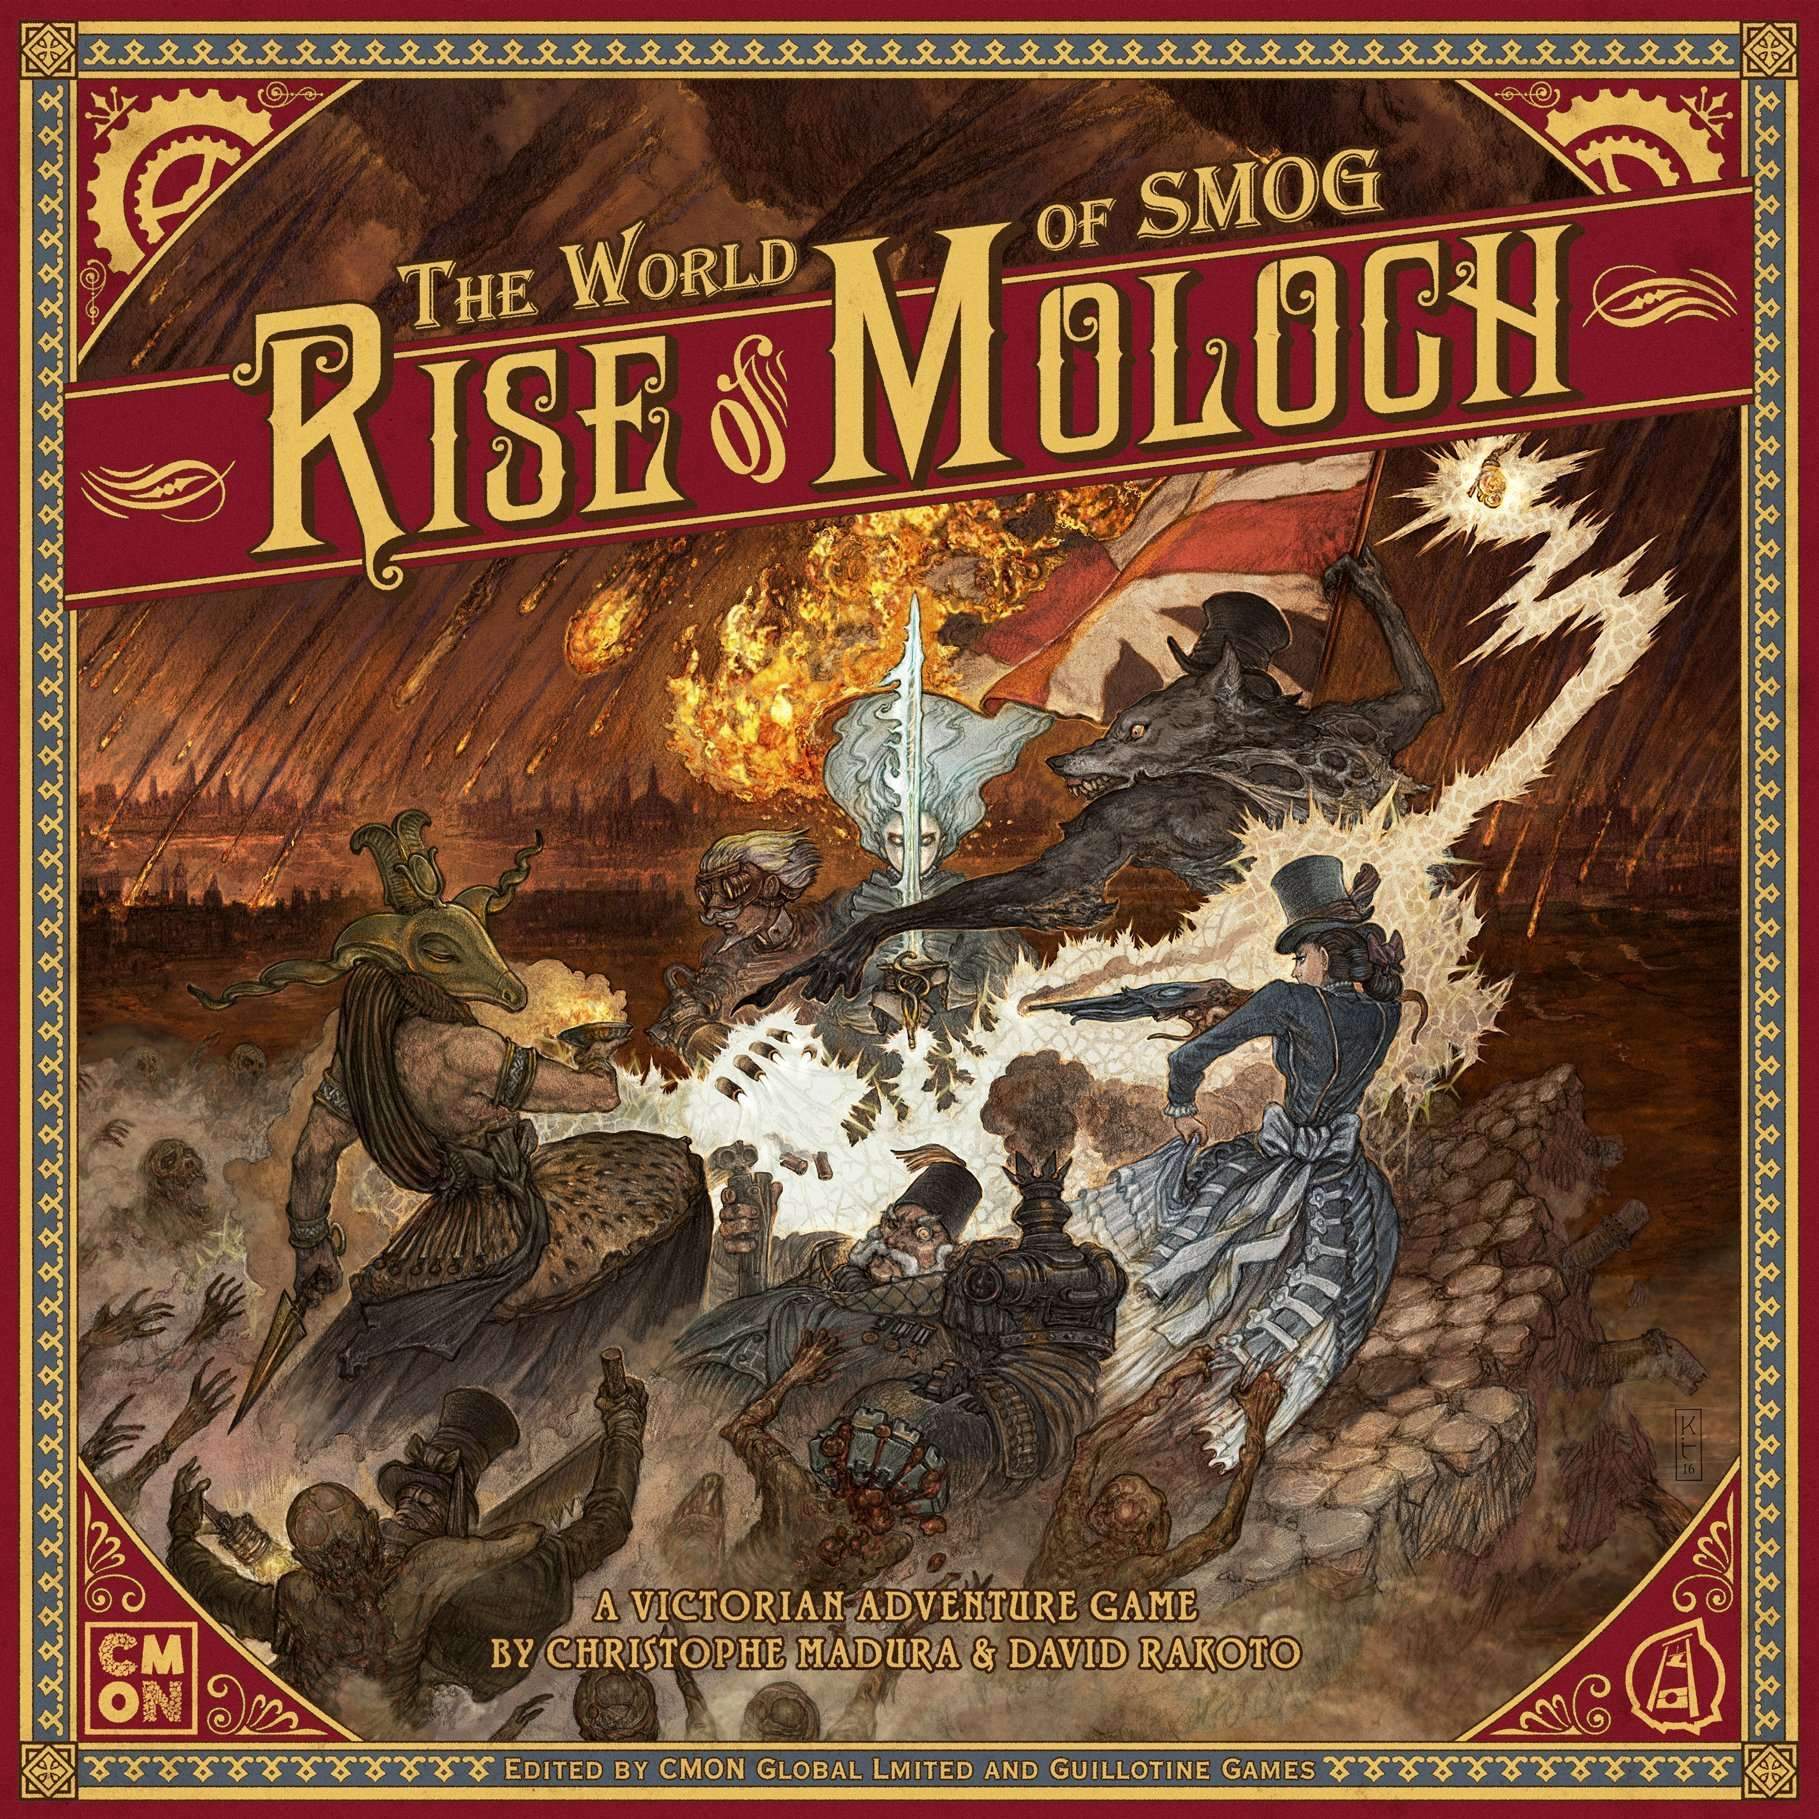 עולם הערפיח: Rise of Moloch (Kickstarter Special) משחק לוח קיקסטארטר CMON מוגבל